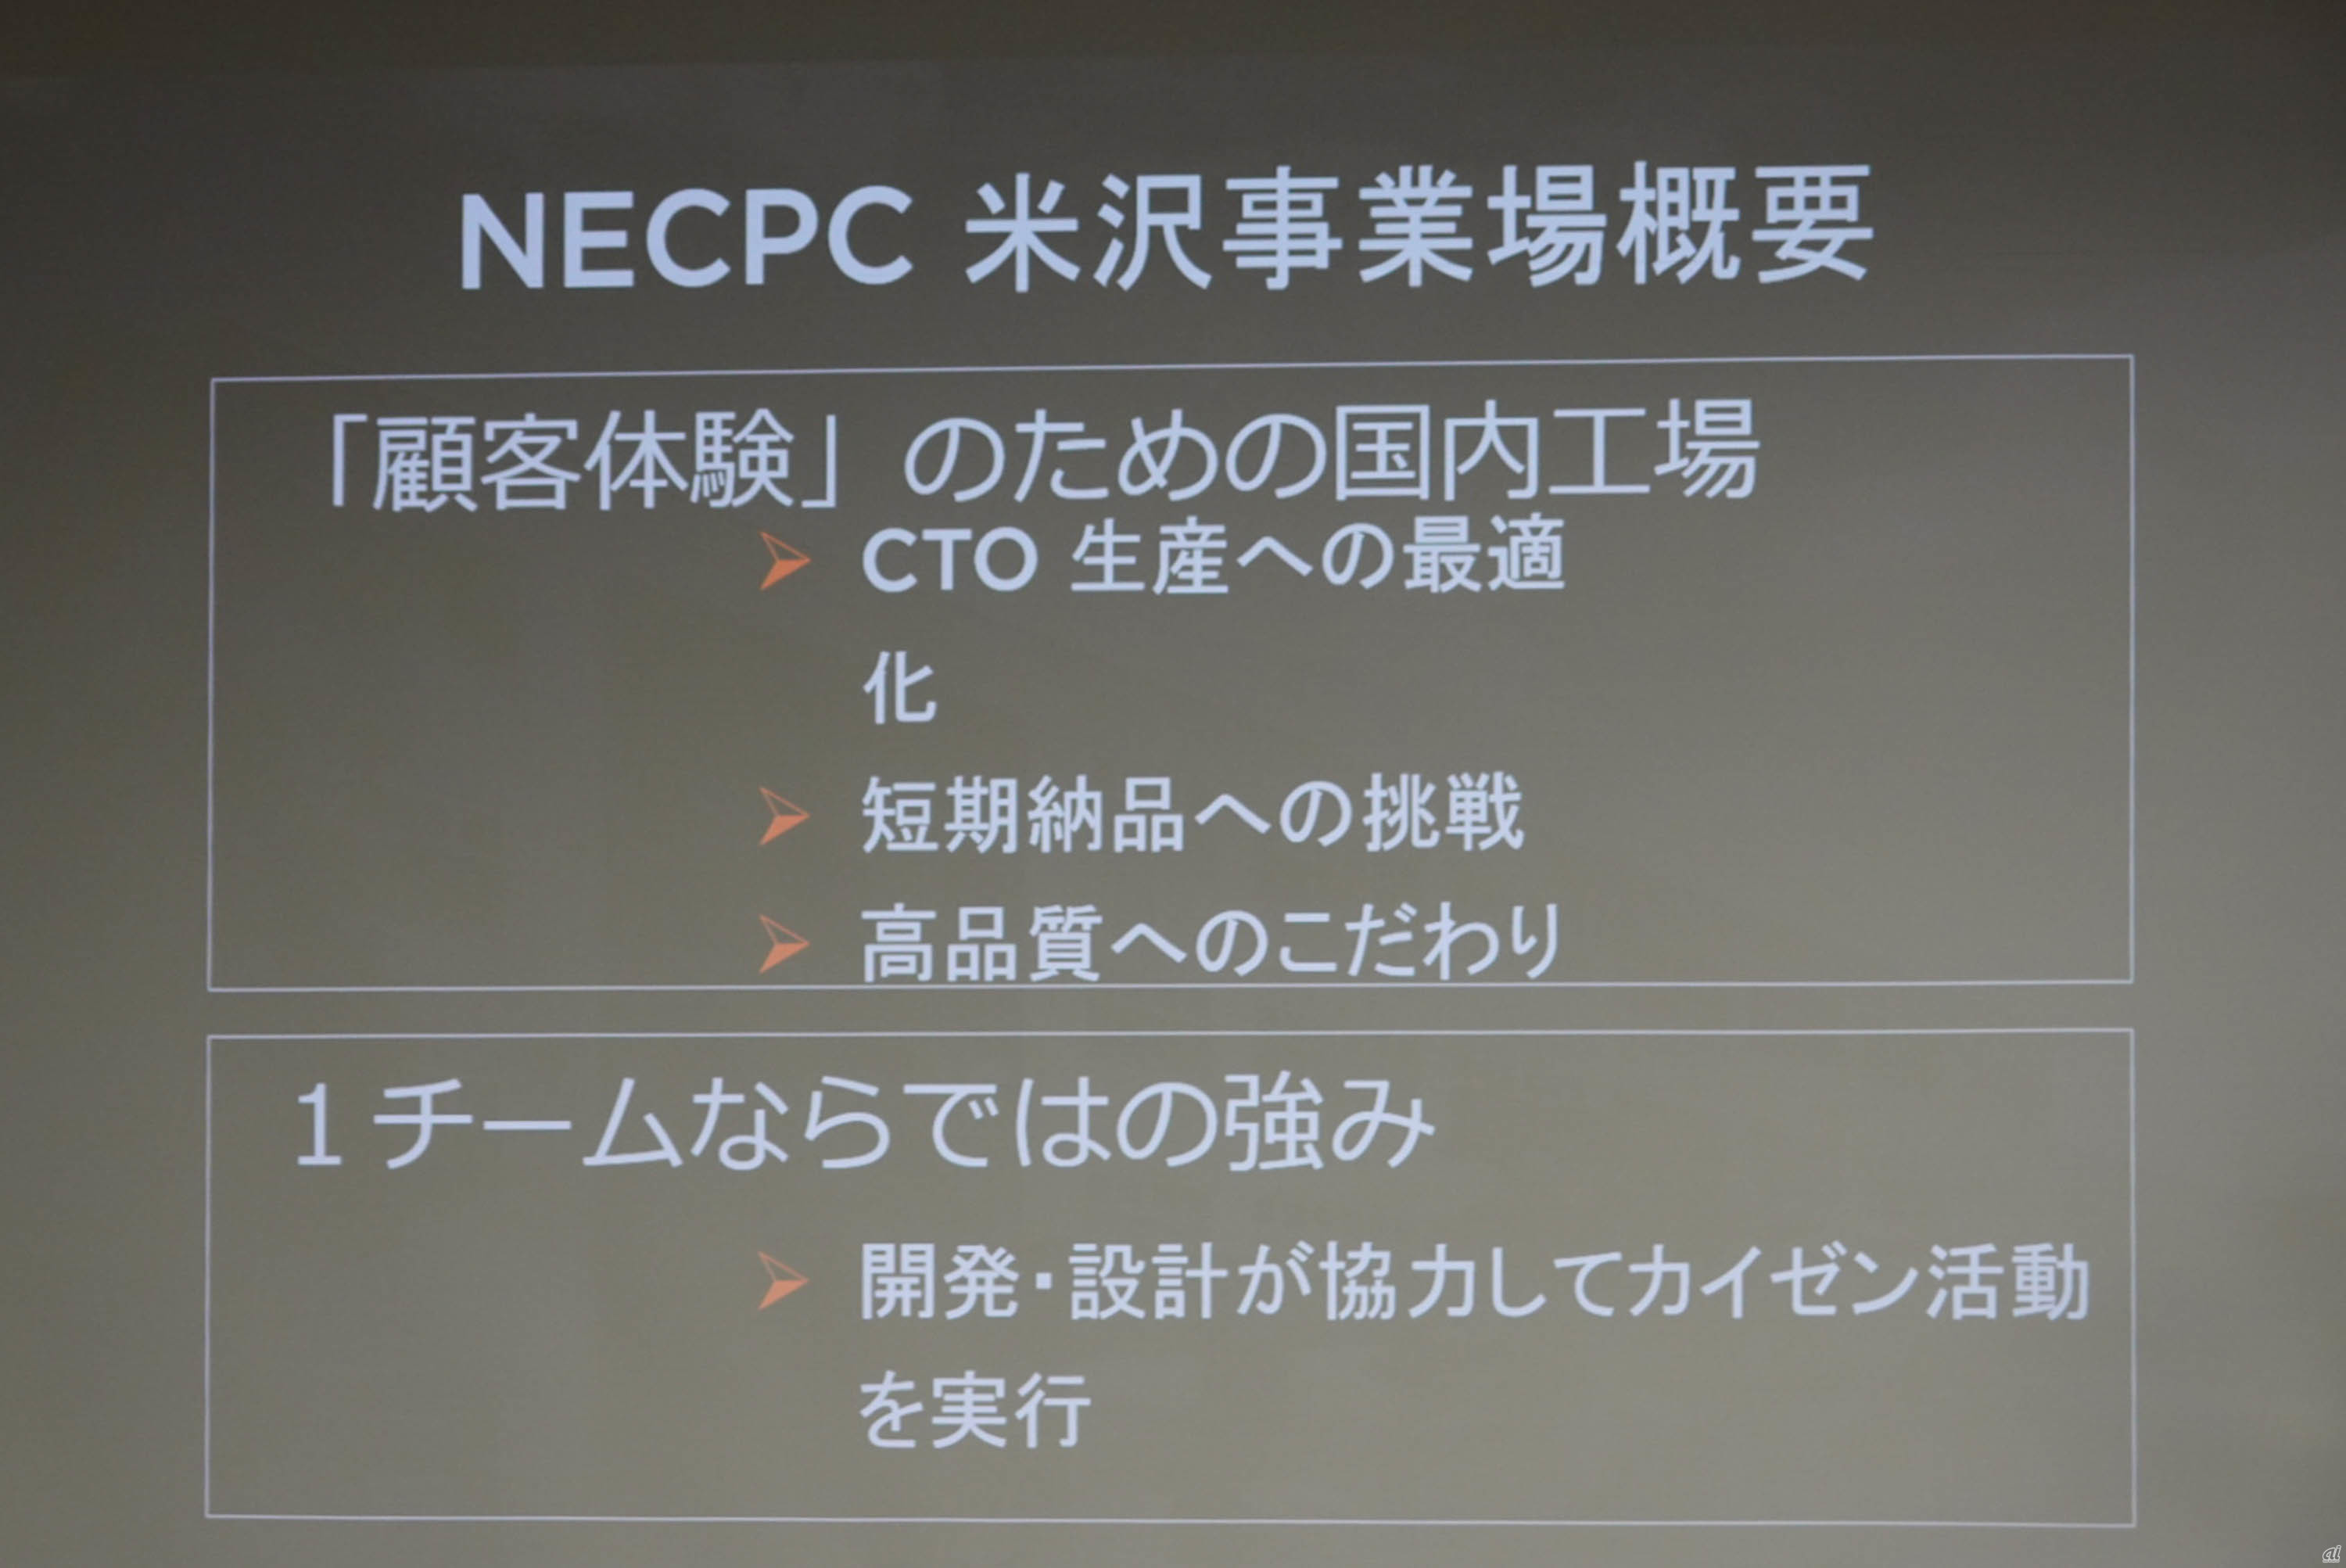 NEC PC 米沢工場の概要